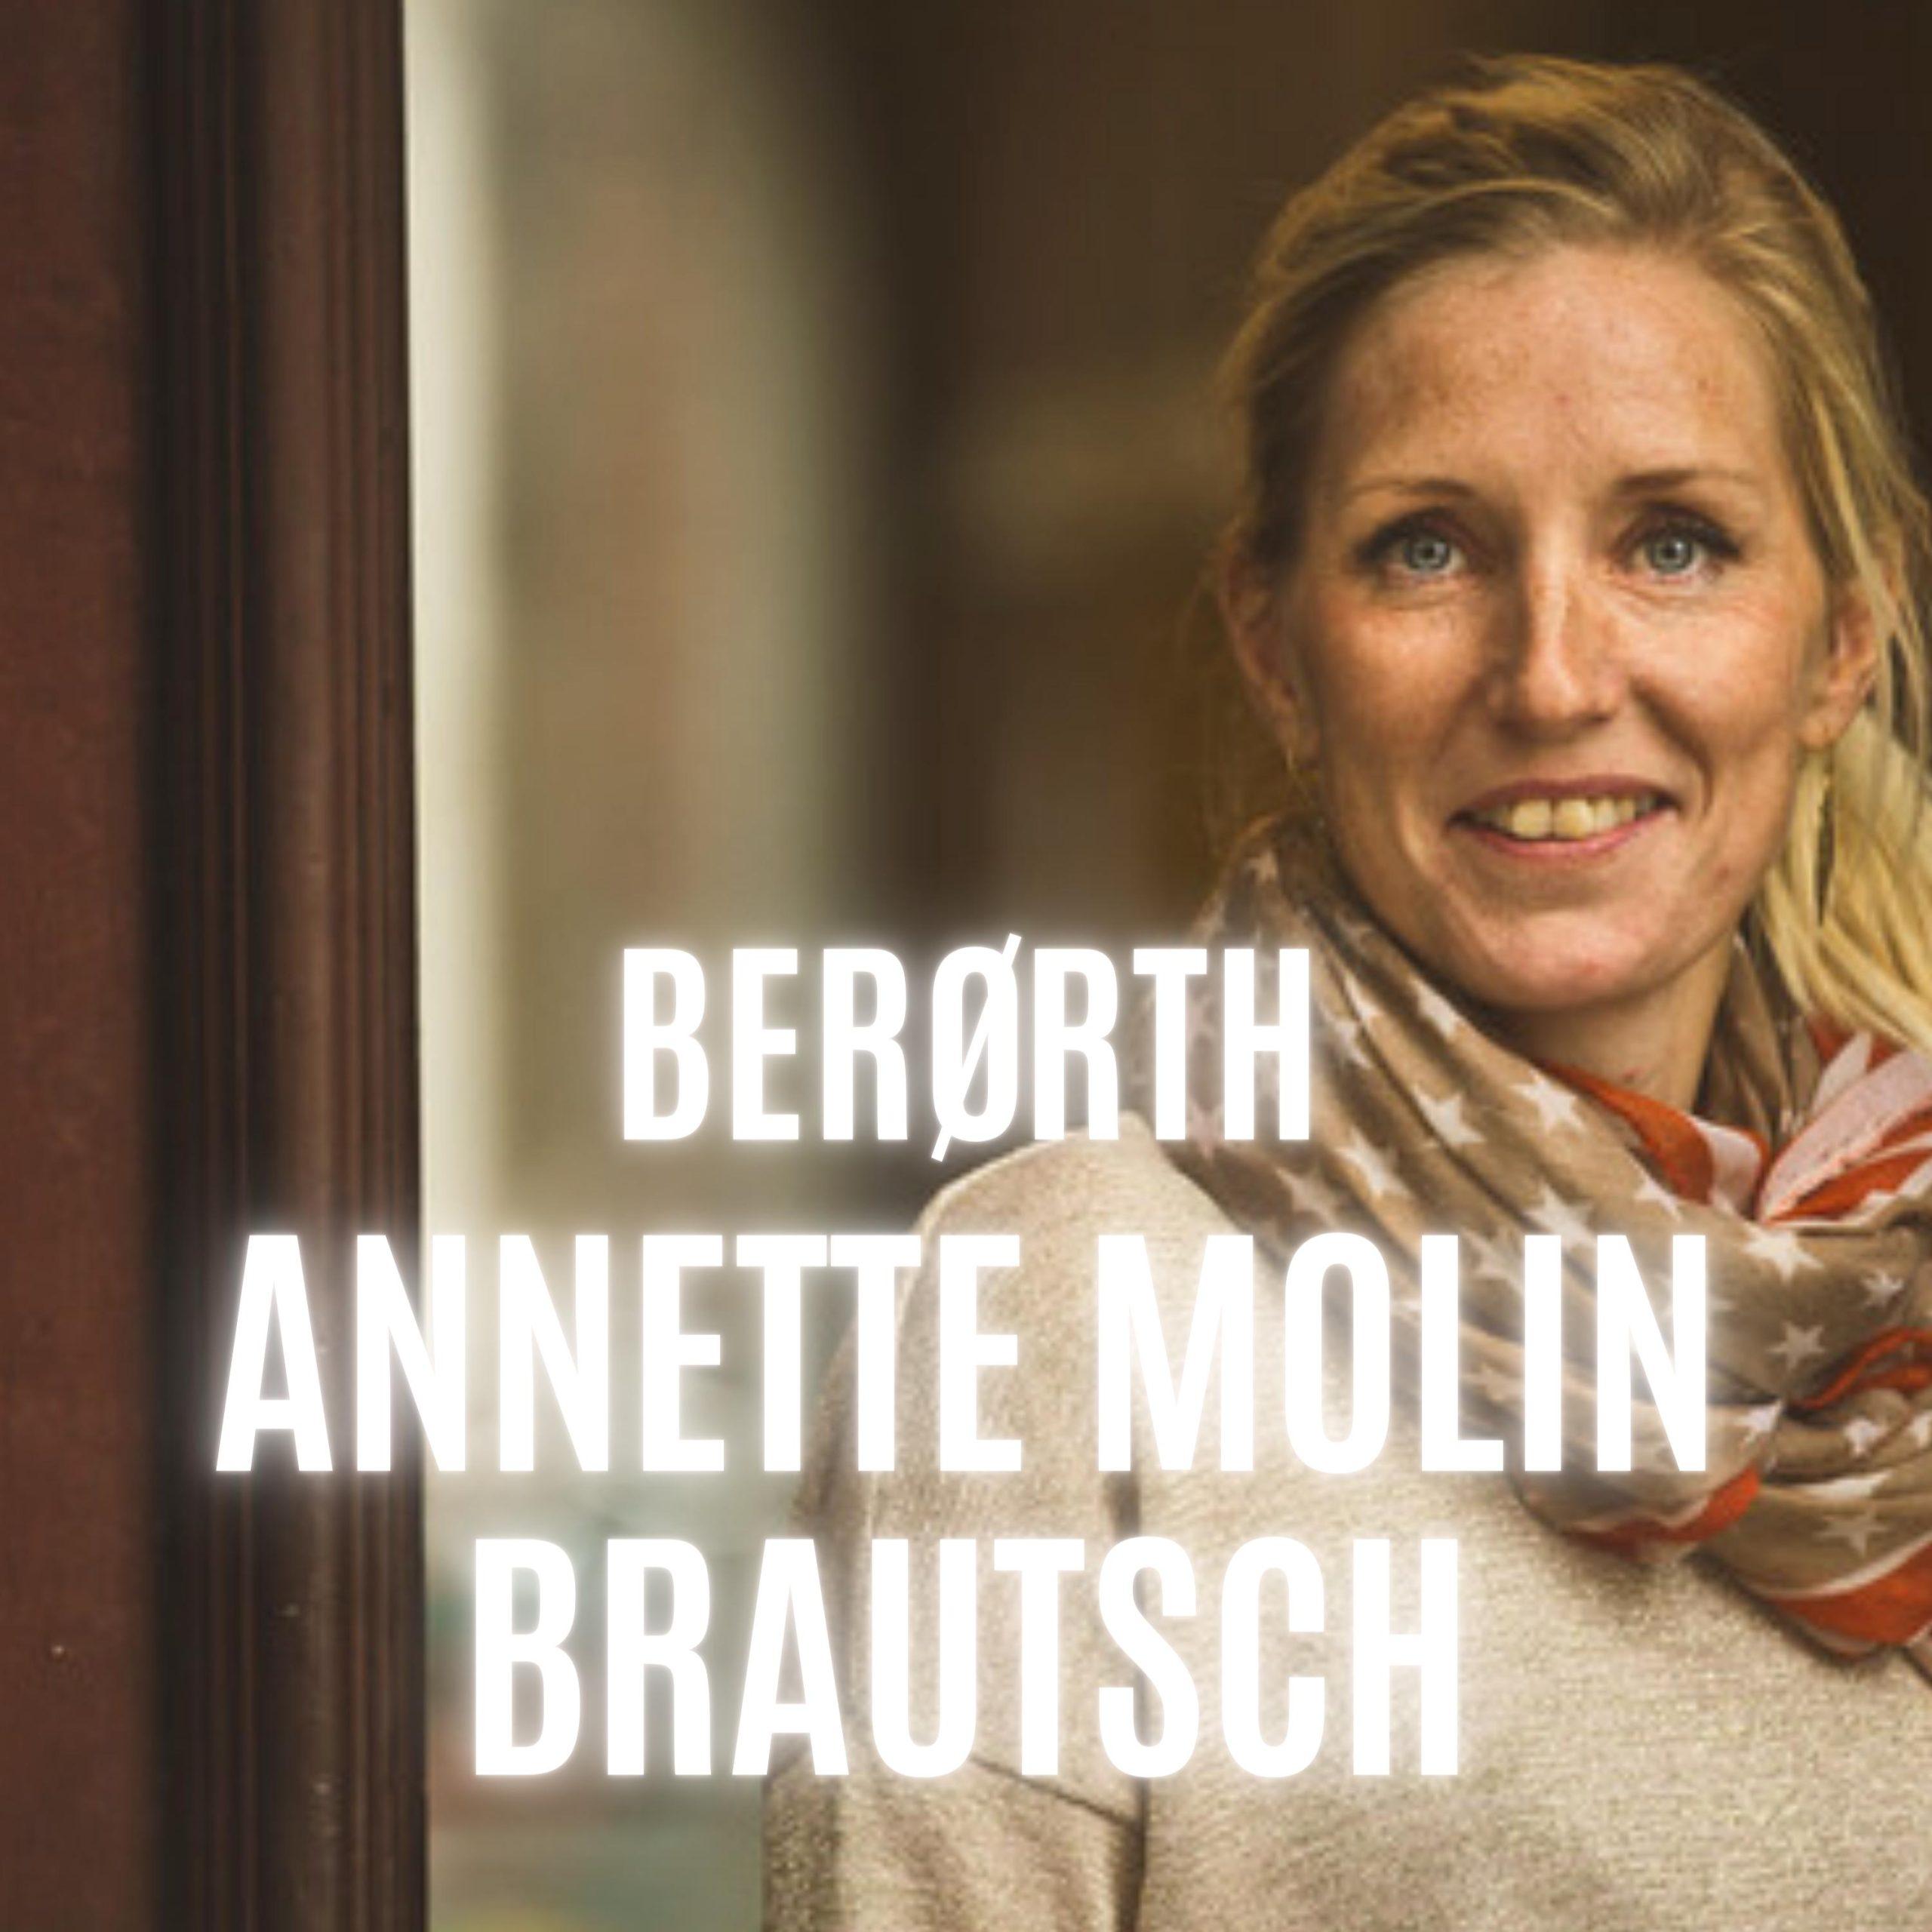 Annette Molin Brautsch